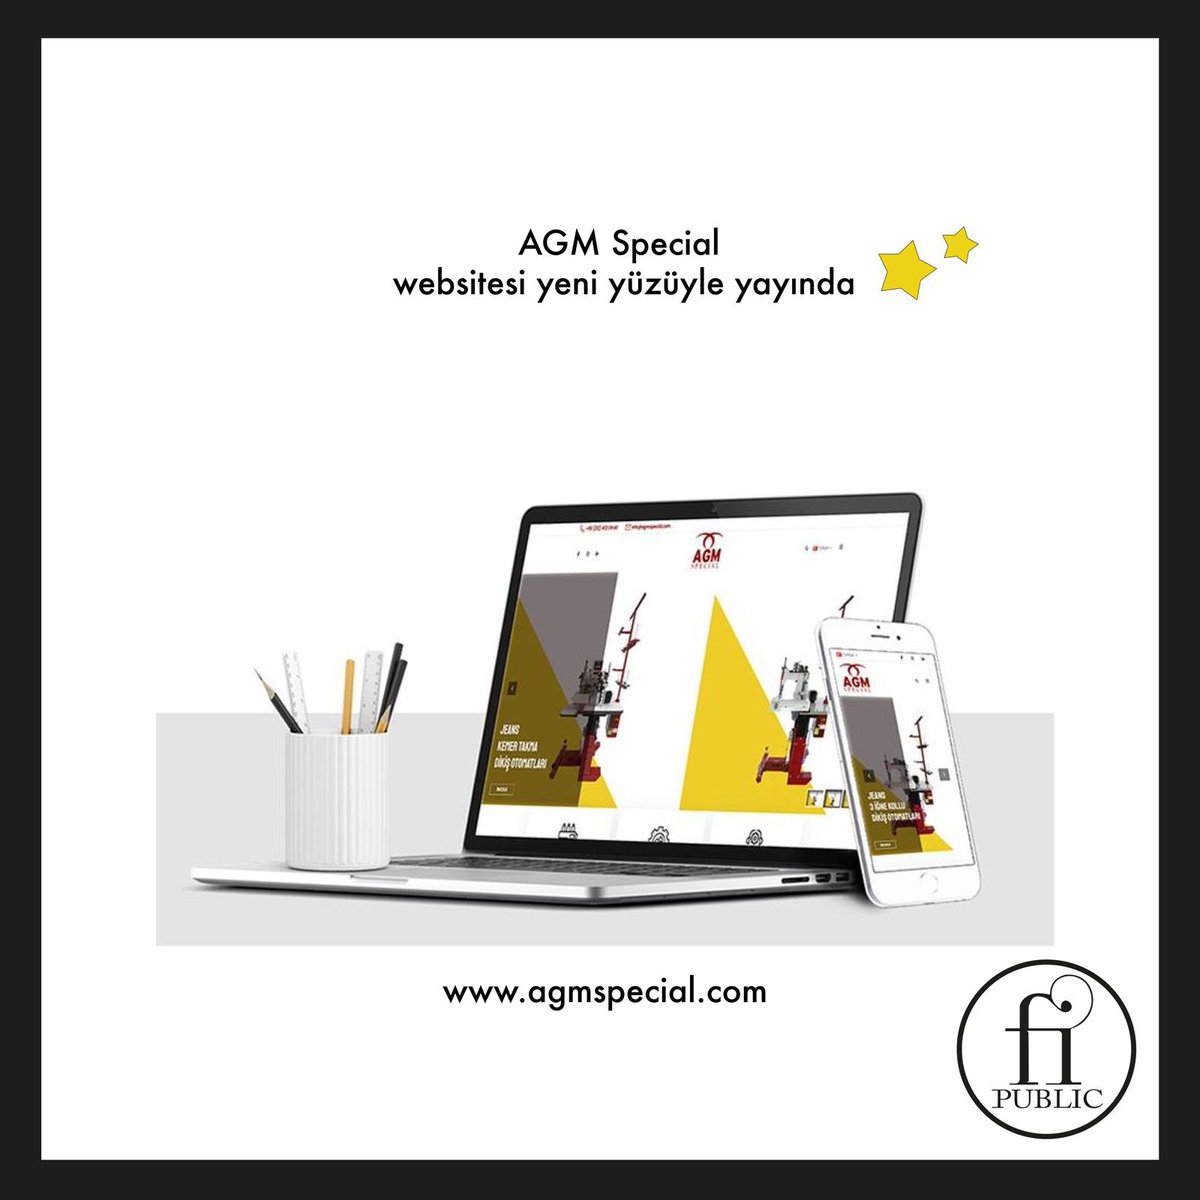 AGM Special için hazırladığımız websitesi yeni yüzüyle yayında💫

#FiPublic #website #webtasarım